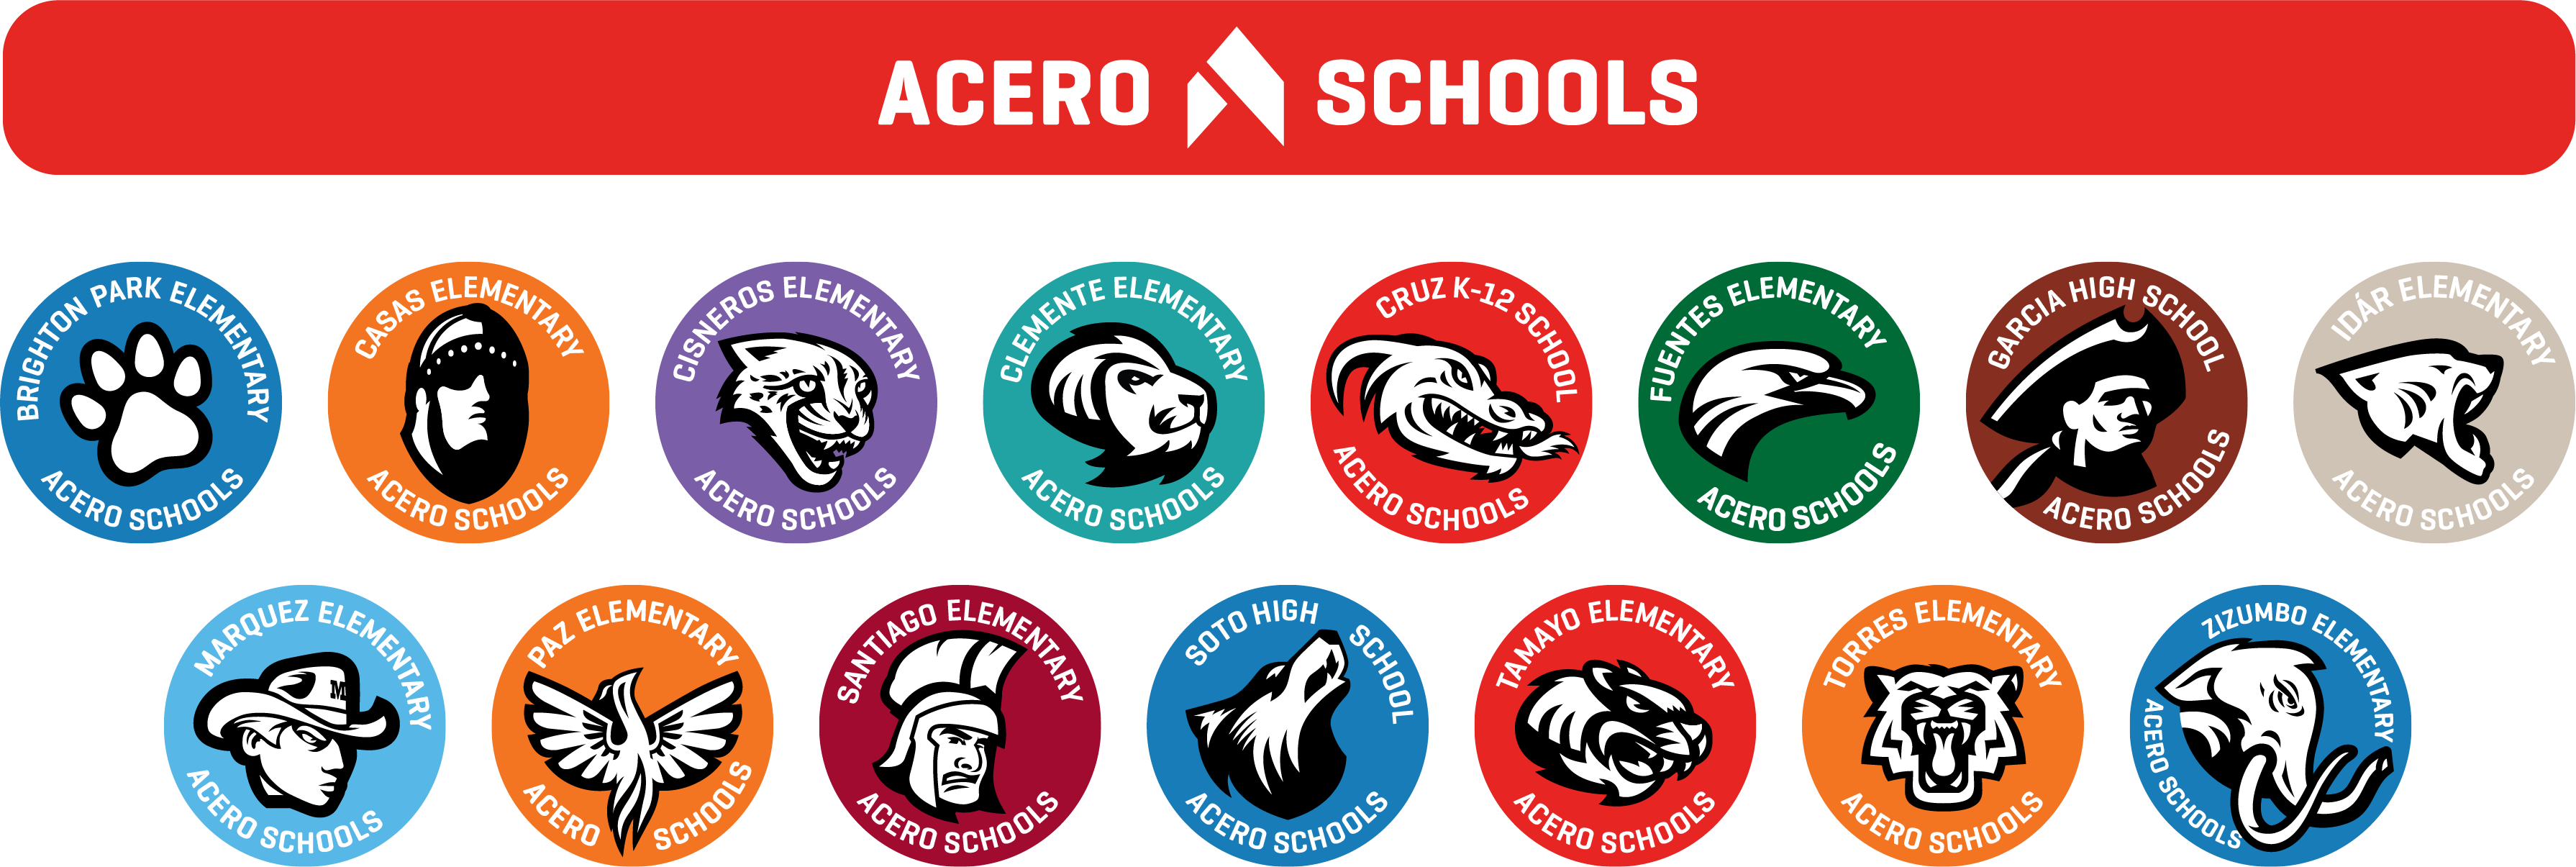 Acero Schools Logos